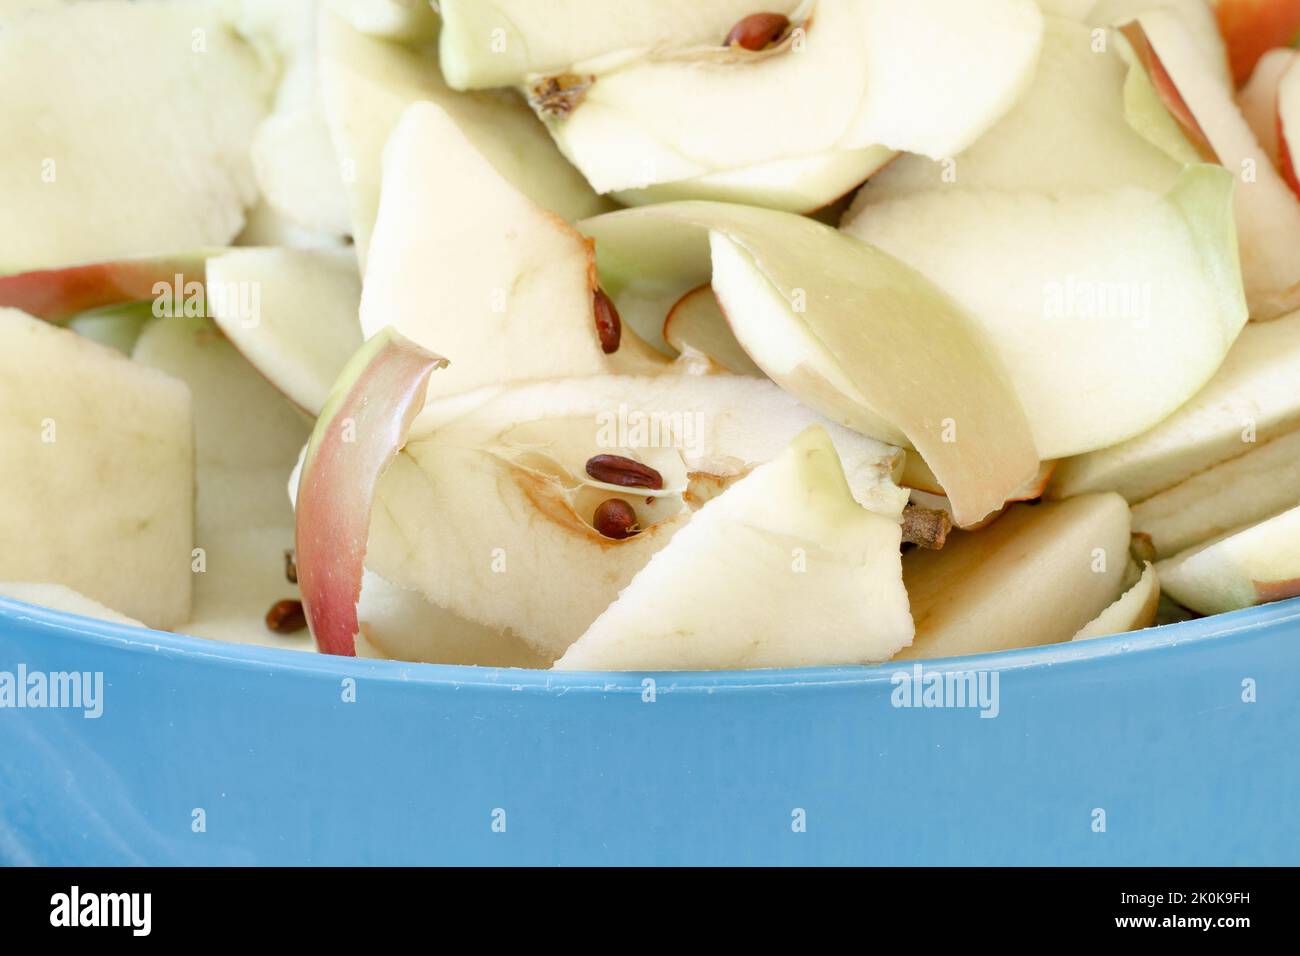 In Scheiben geschnittene Äpfel und Peelings in einer blauen Schüssel, fertig zum Kompostieren Stockfoto